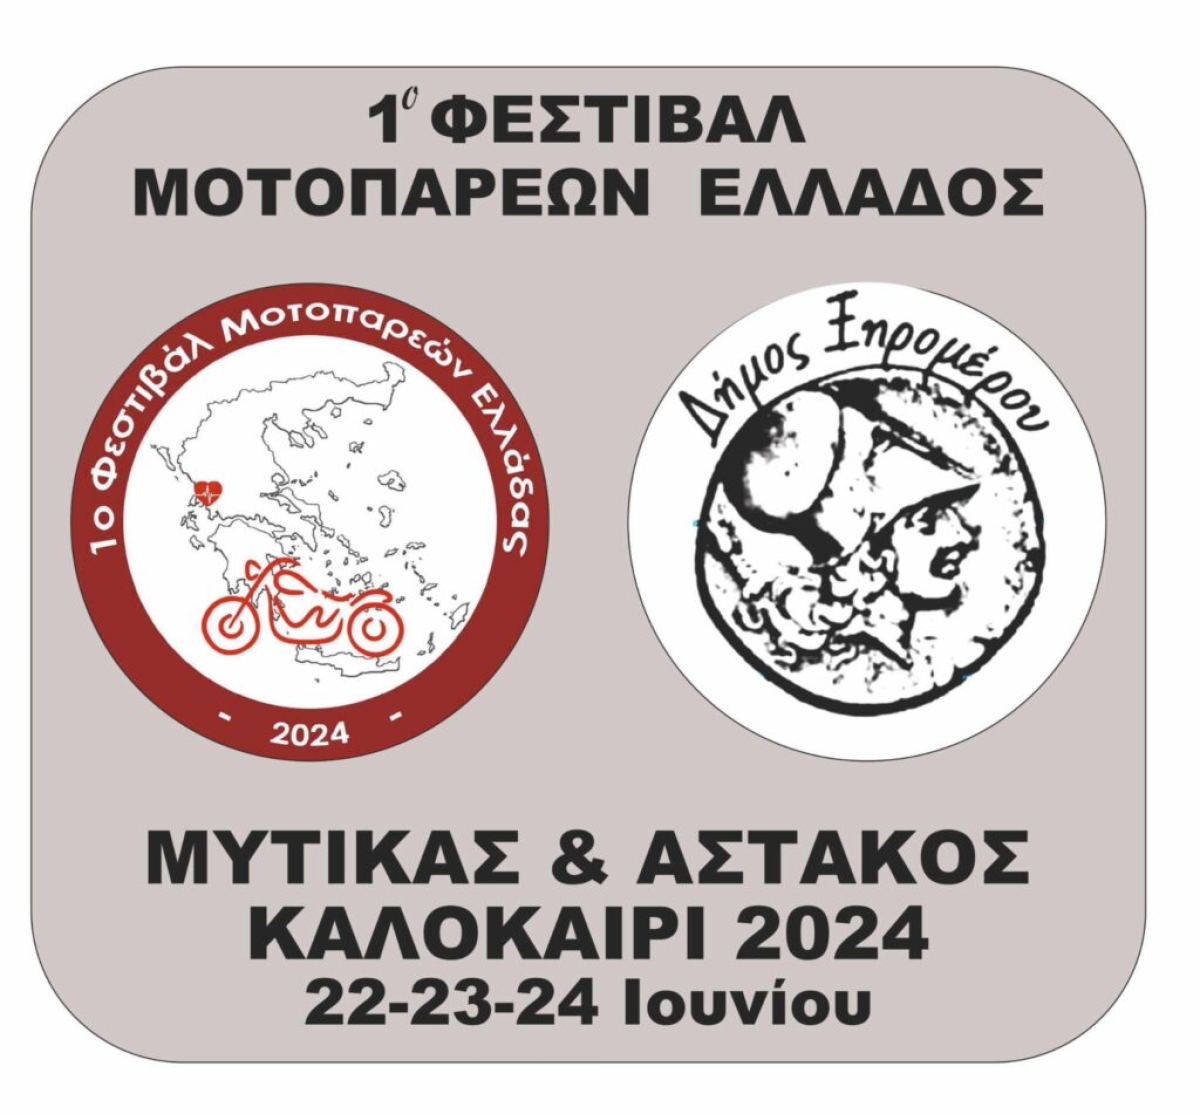 1ο Φεστιβάλ Μοτοπαρεών Ελλάδος σε Αστακό και Μύτικα (Σαβ 22 - Δευ 24/6/2024)